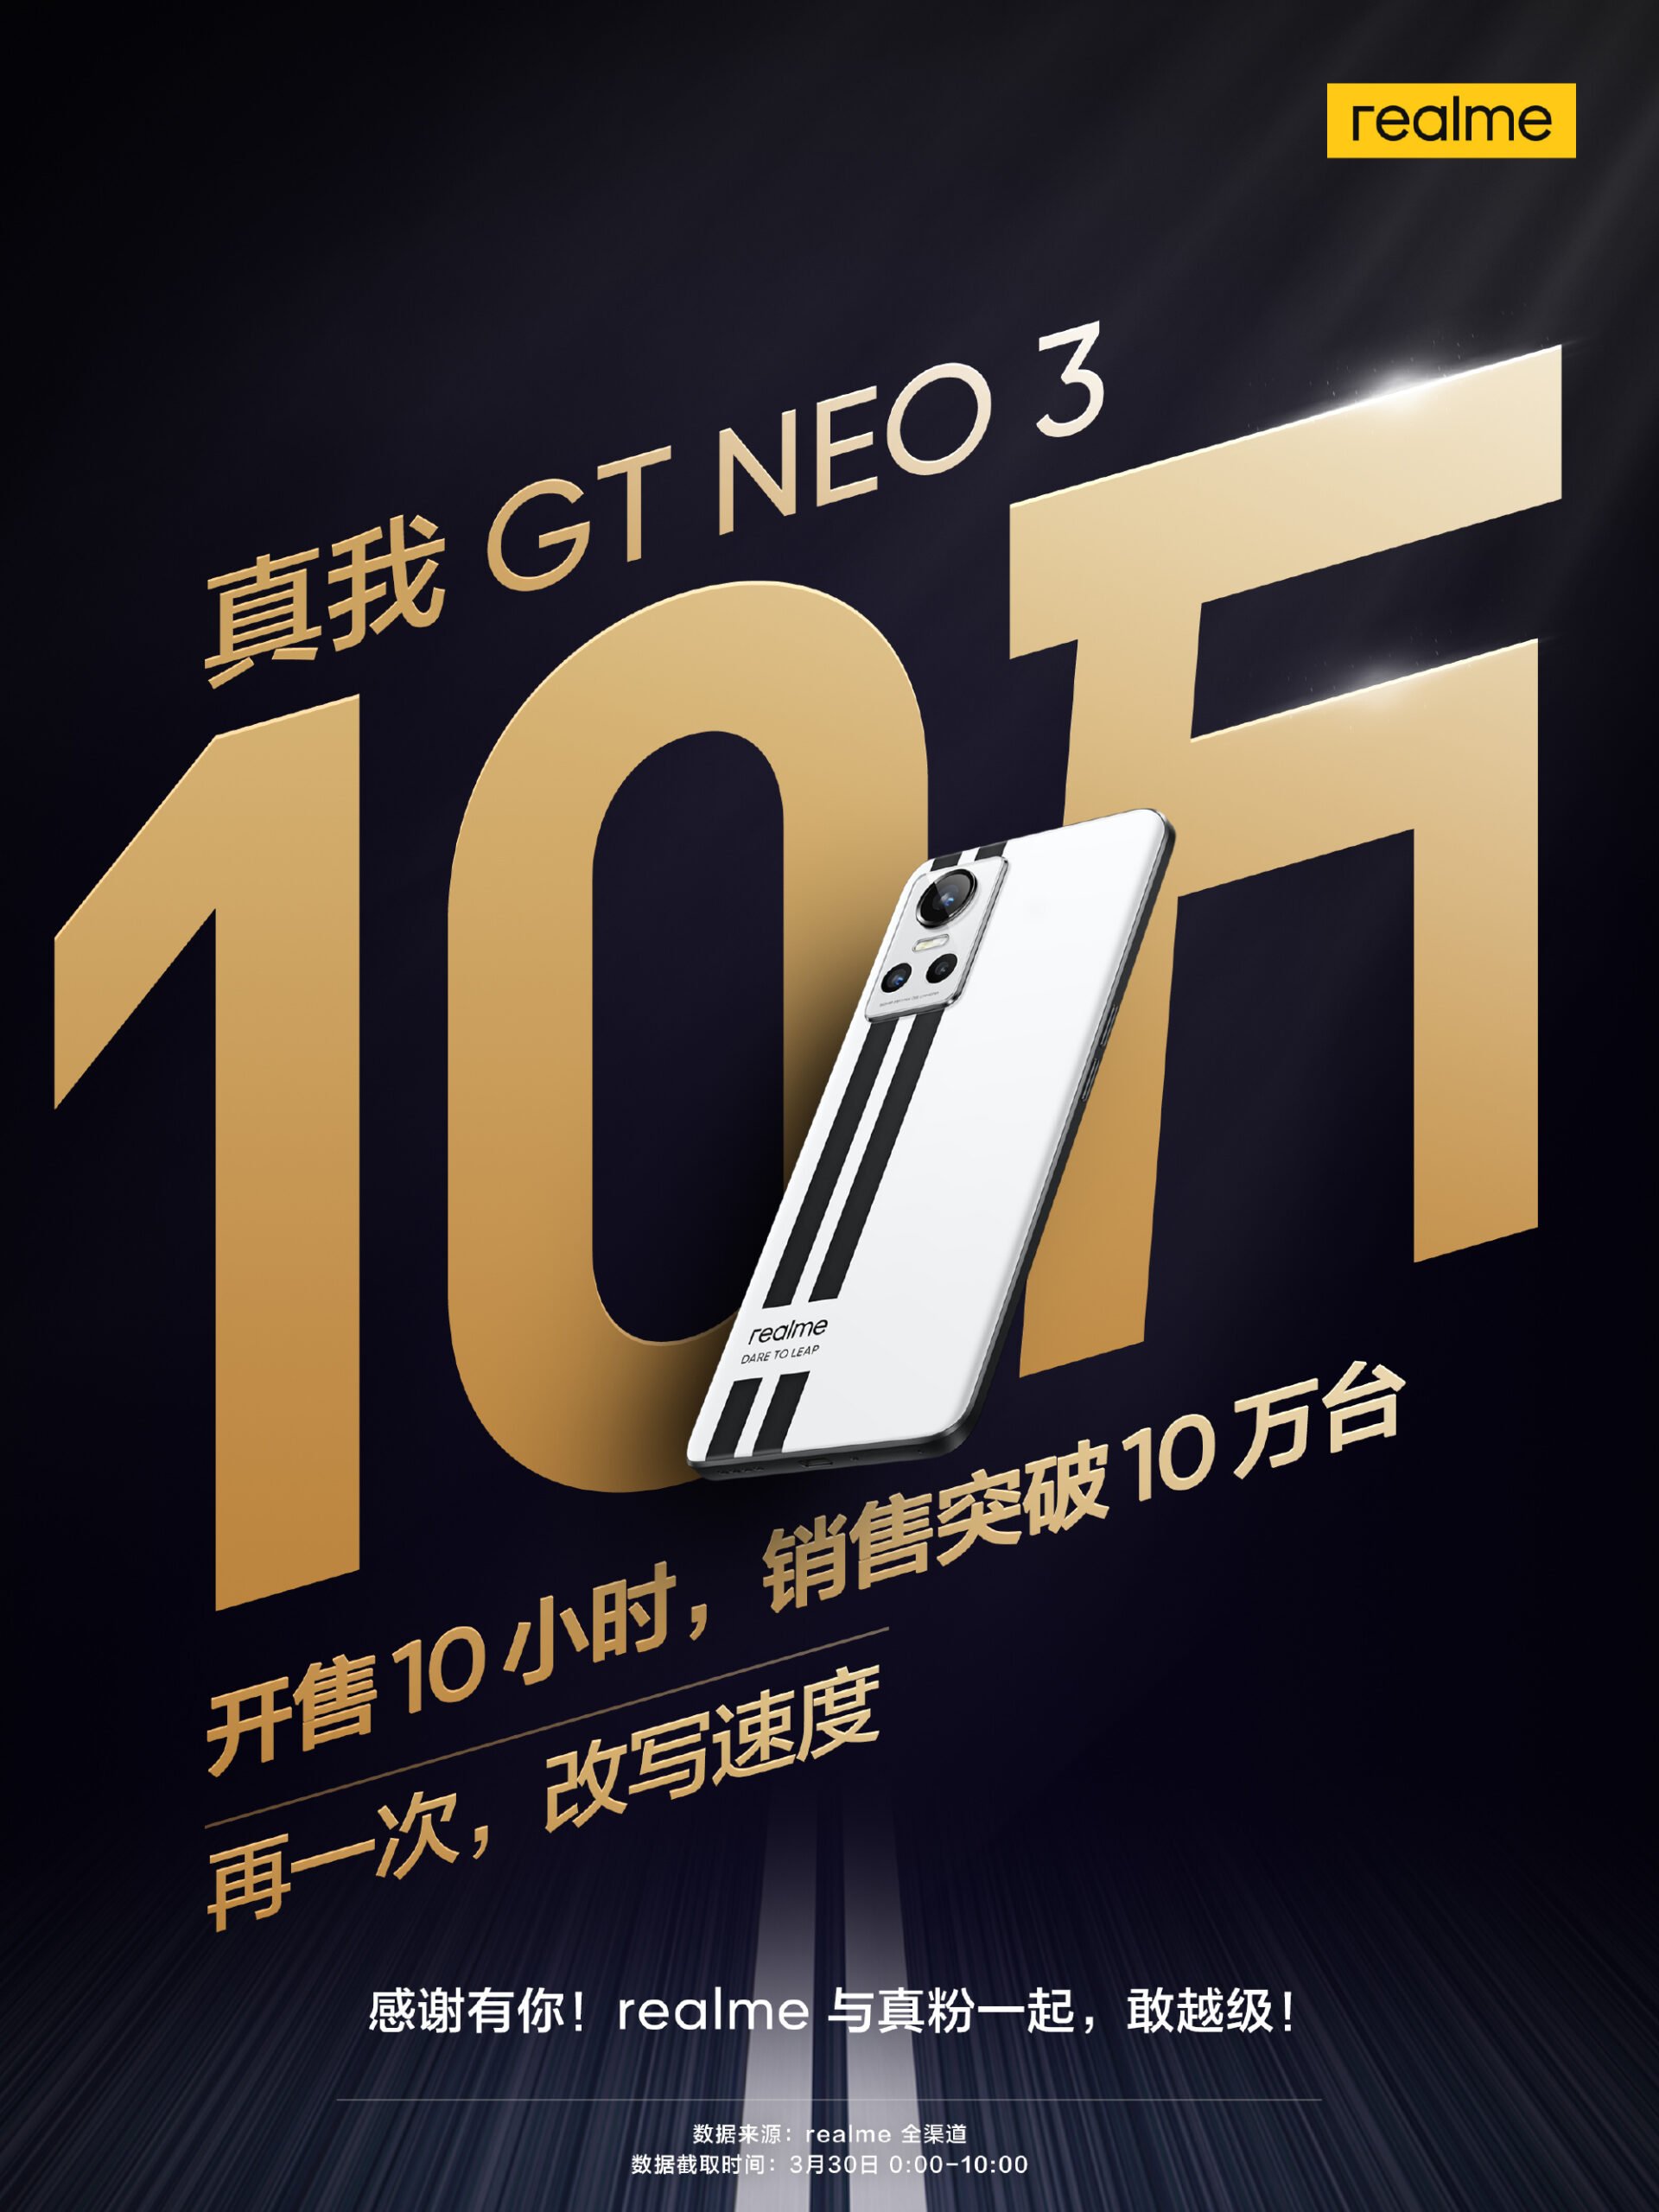 Realme GT Neo3 ขายได้กว่า 100000 เครื่องที่จีน ภายในวันแรกที่เปิดวางขาย